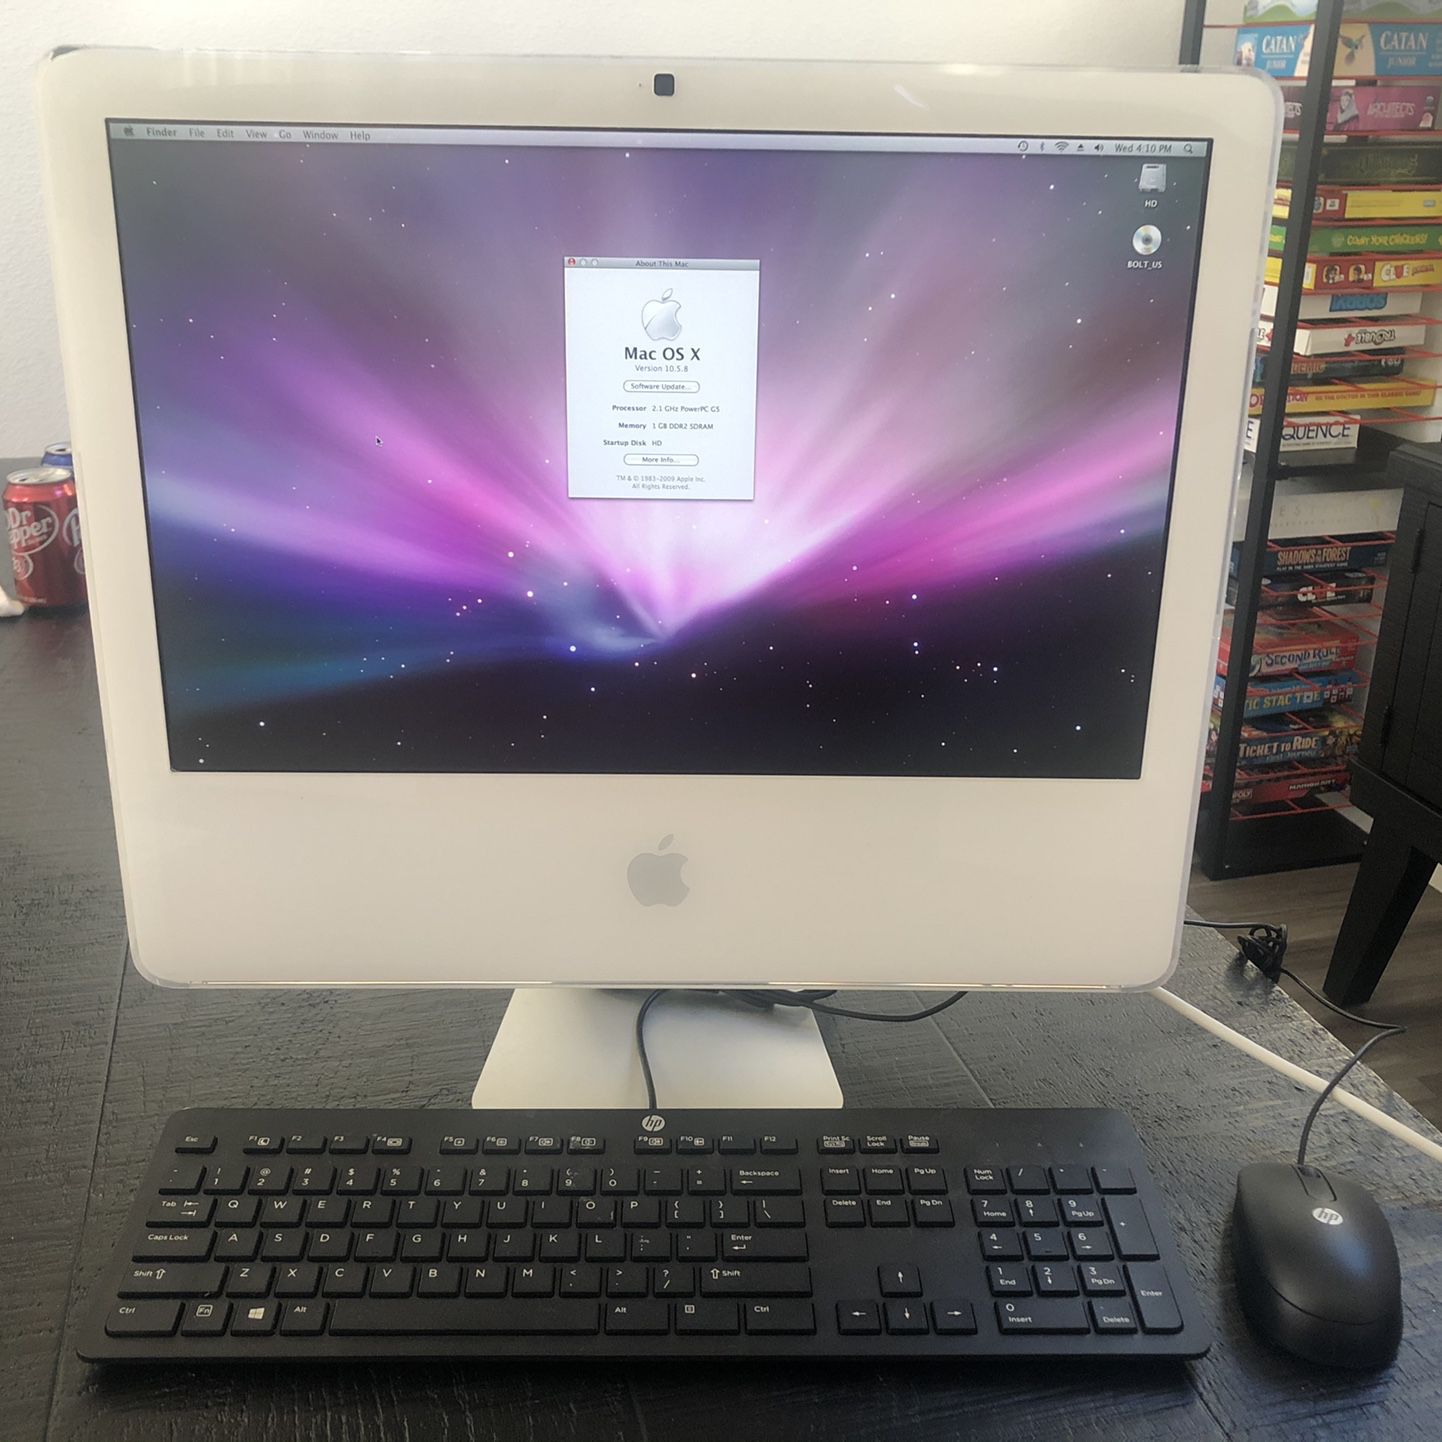 Apple iMac G5 “iSight”